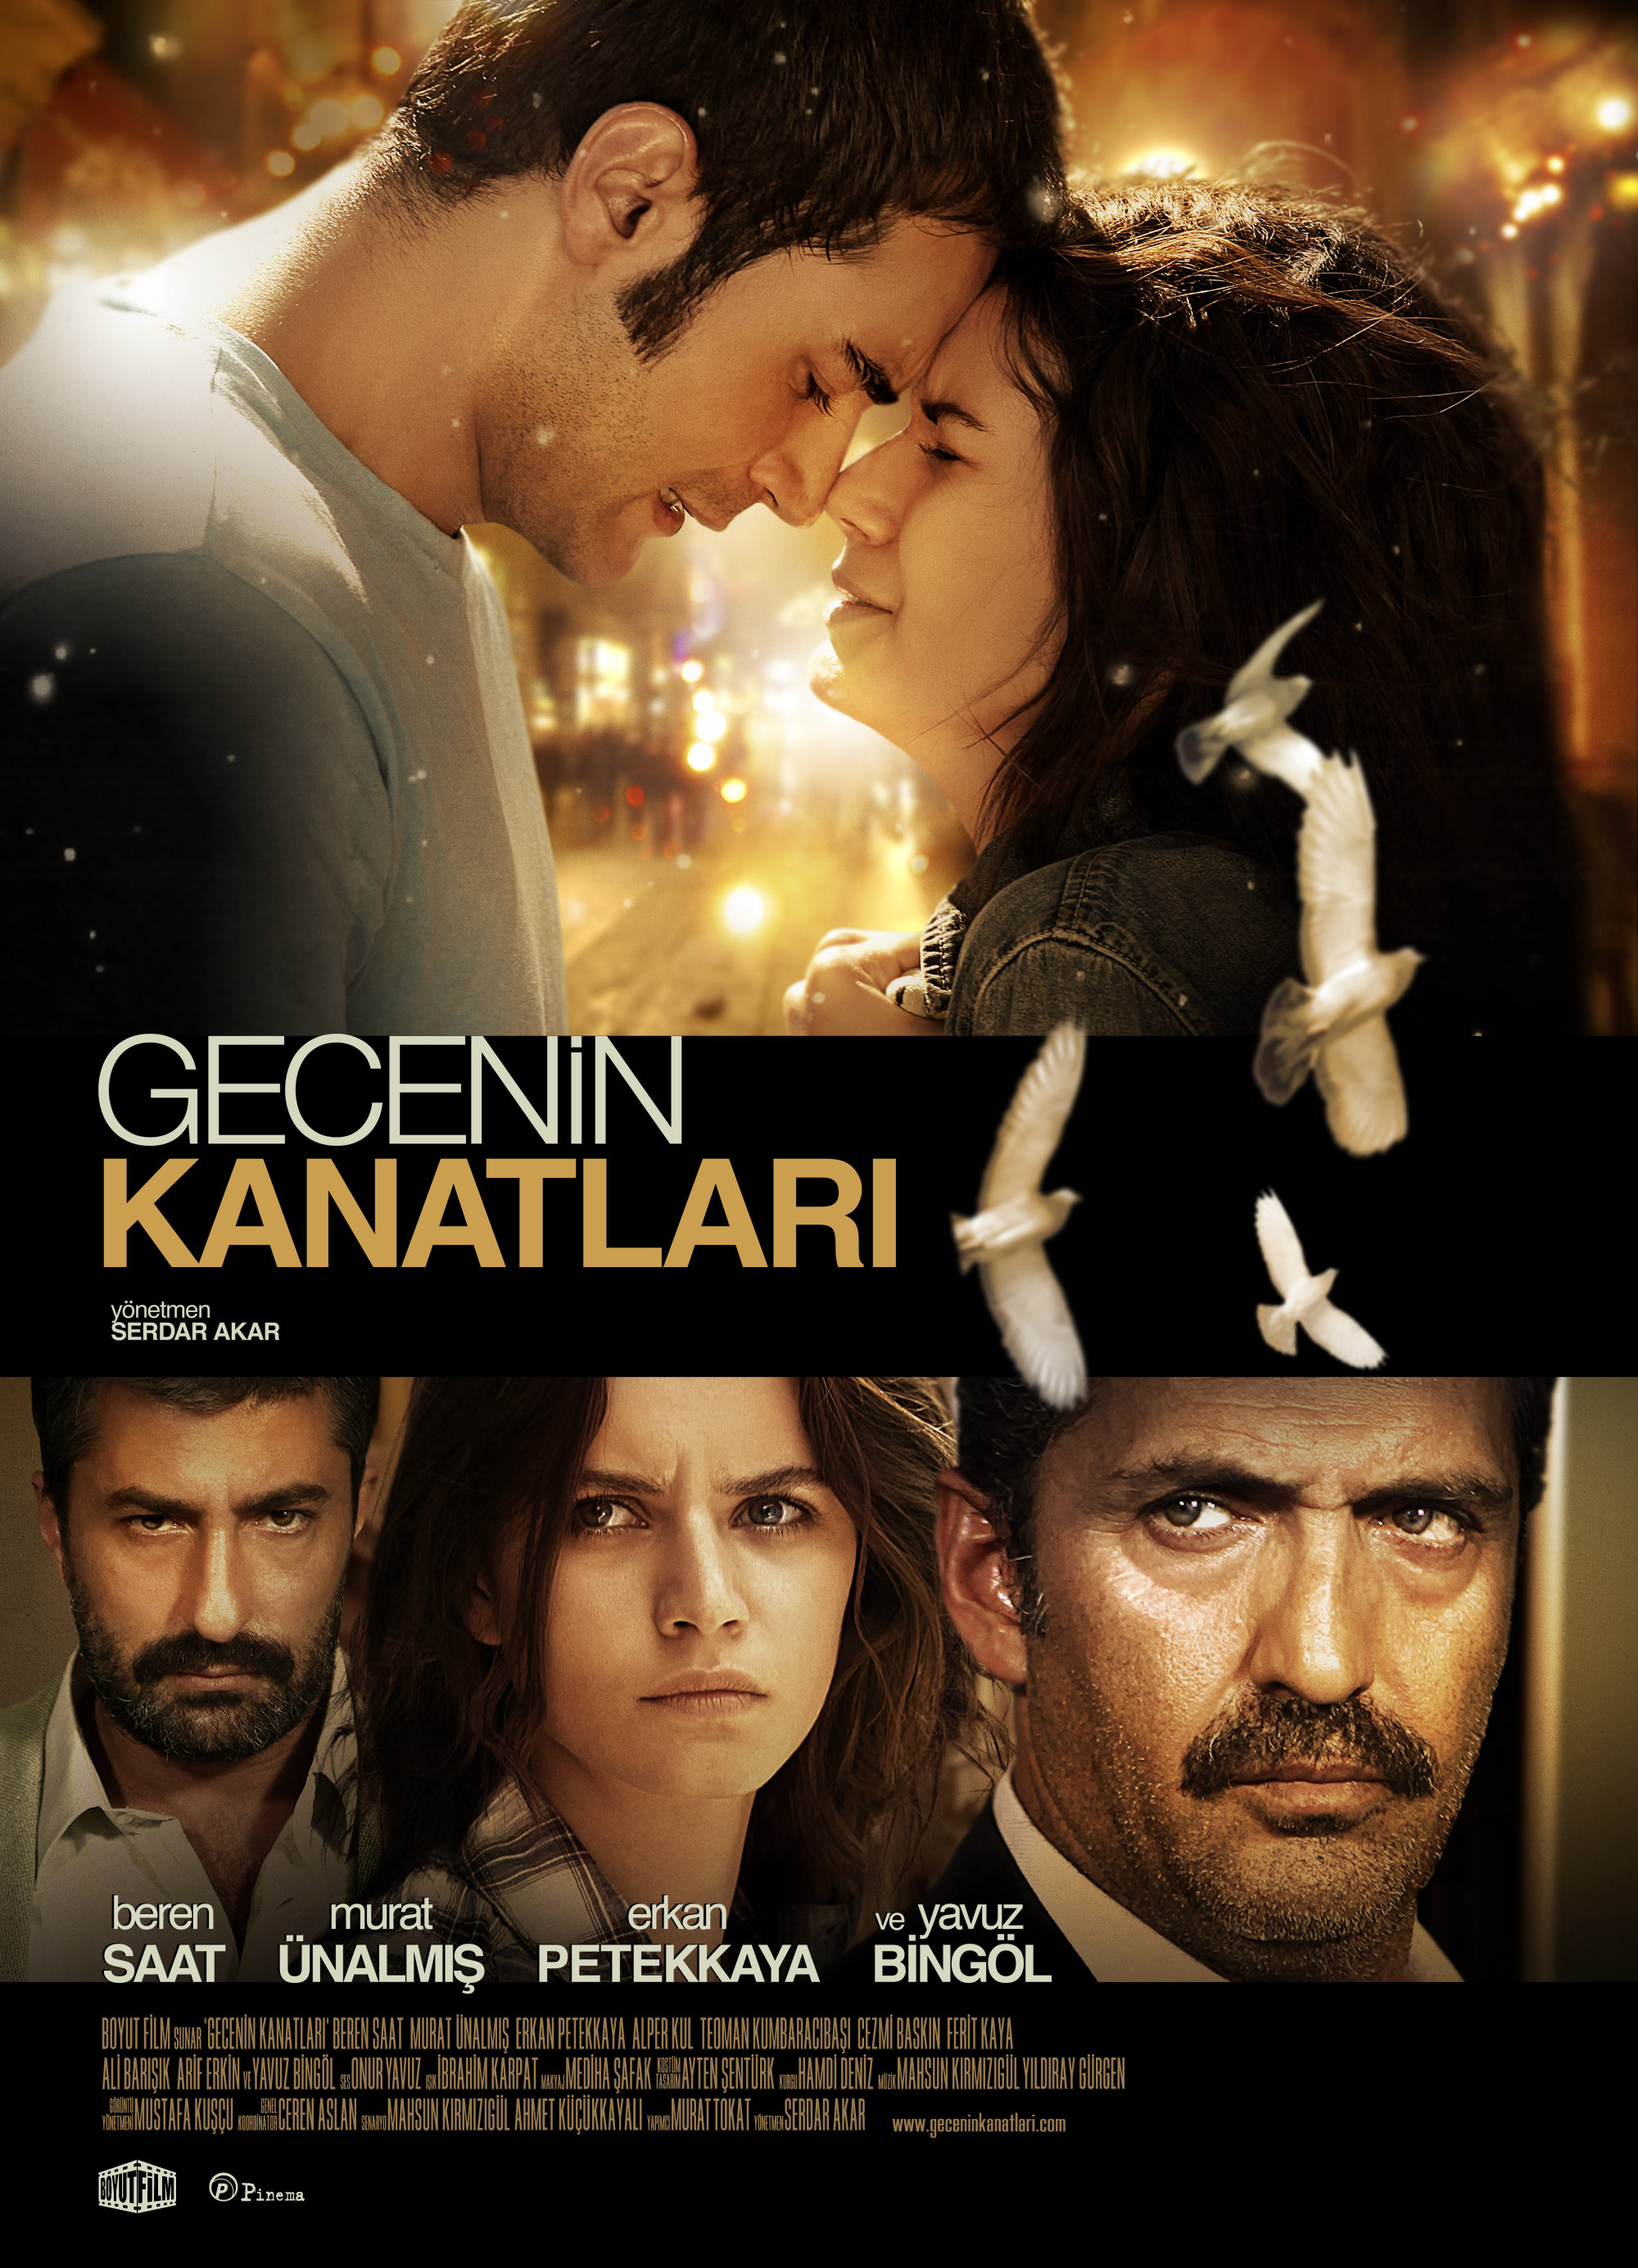 Yavuz Bingol, Beren Saat, Erkan Petekkaya and Murat Ünalmis in Gecenin Kanatlari (2009)